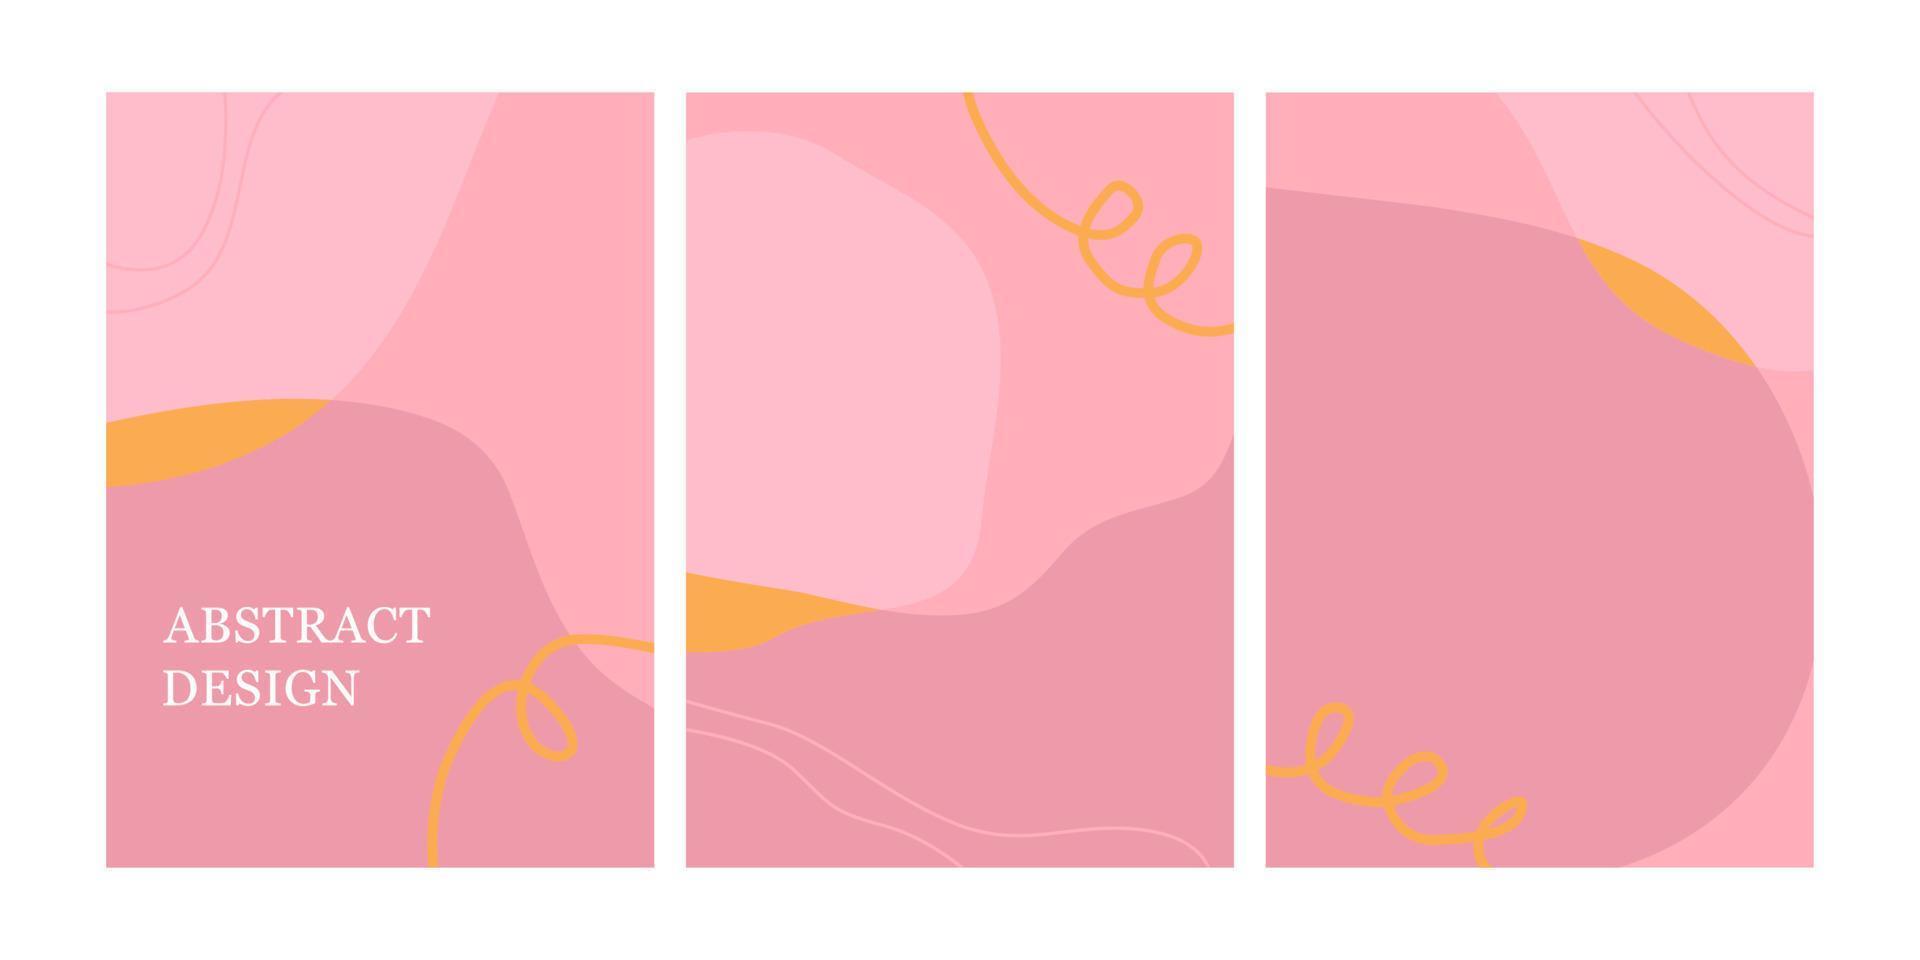 uppsättning modern designmall med abstrakta organiska former i pastellrosa färger. minimal snygg bakgrund för broschyr, flygblad, banner, affisch och varumärkesdesign. vektor illustration